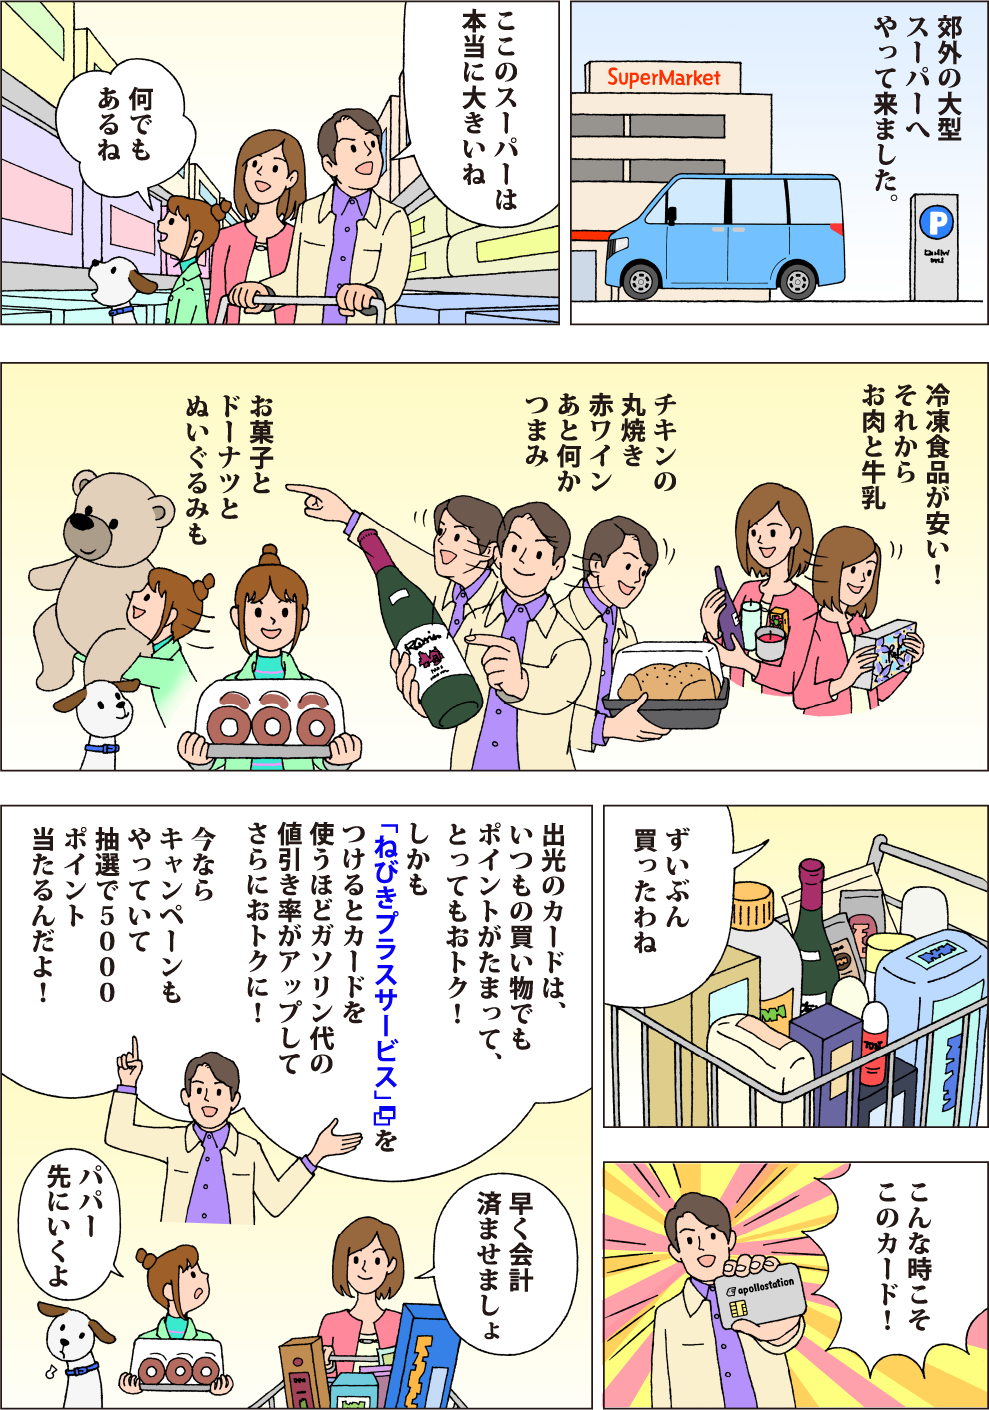 おトク・ファミリードライブ日和　スーパーマーケット編の漫画